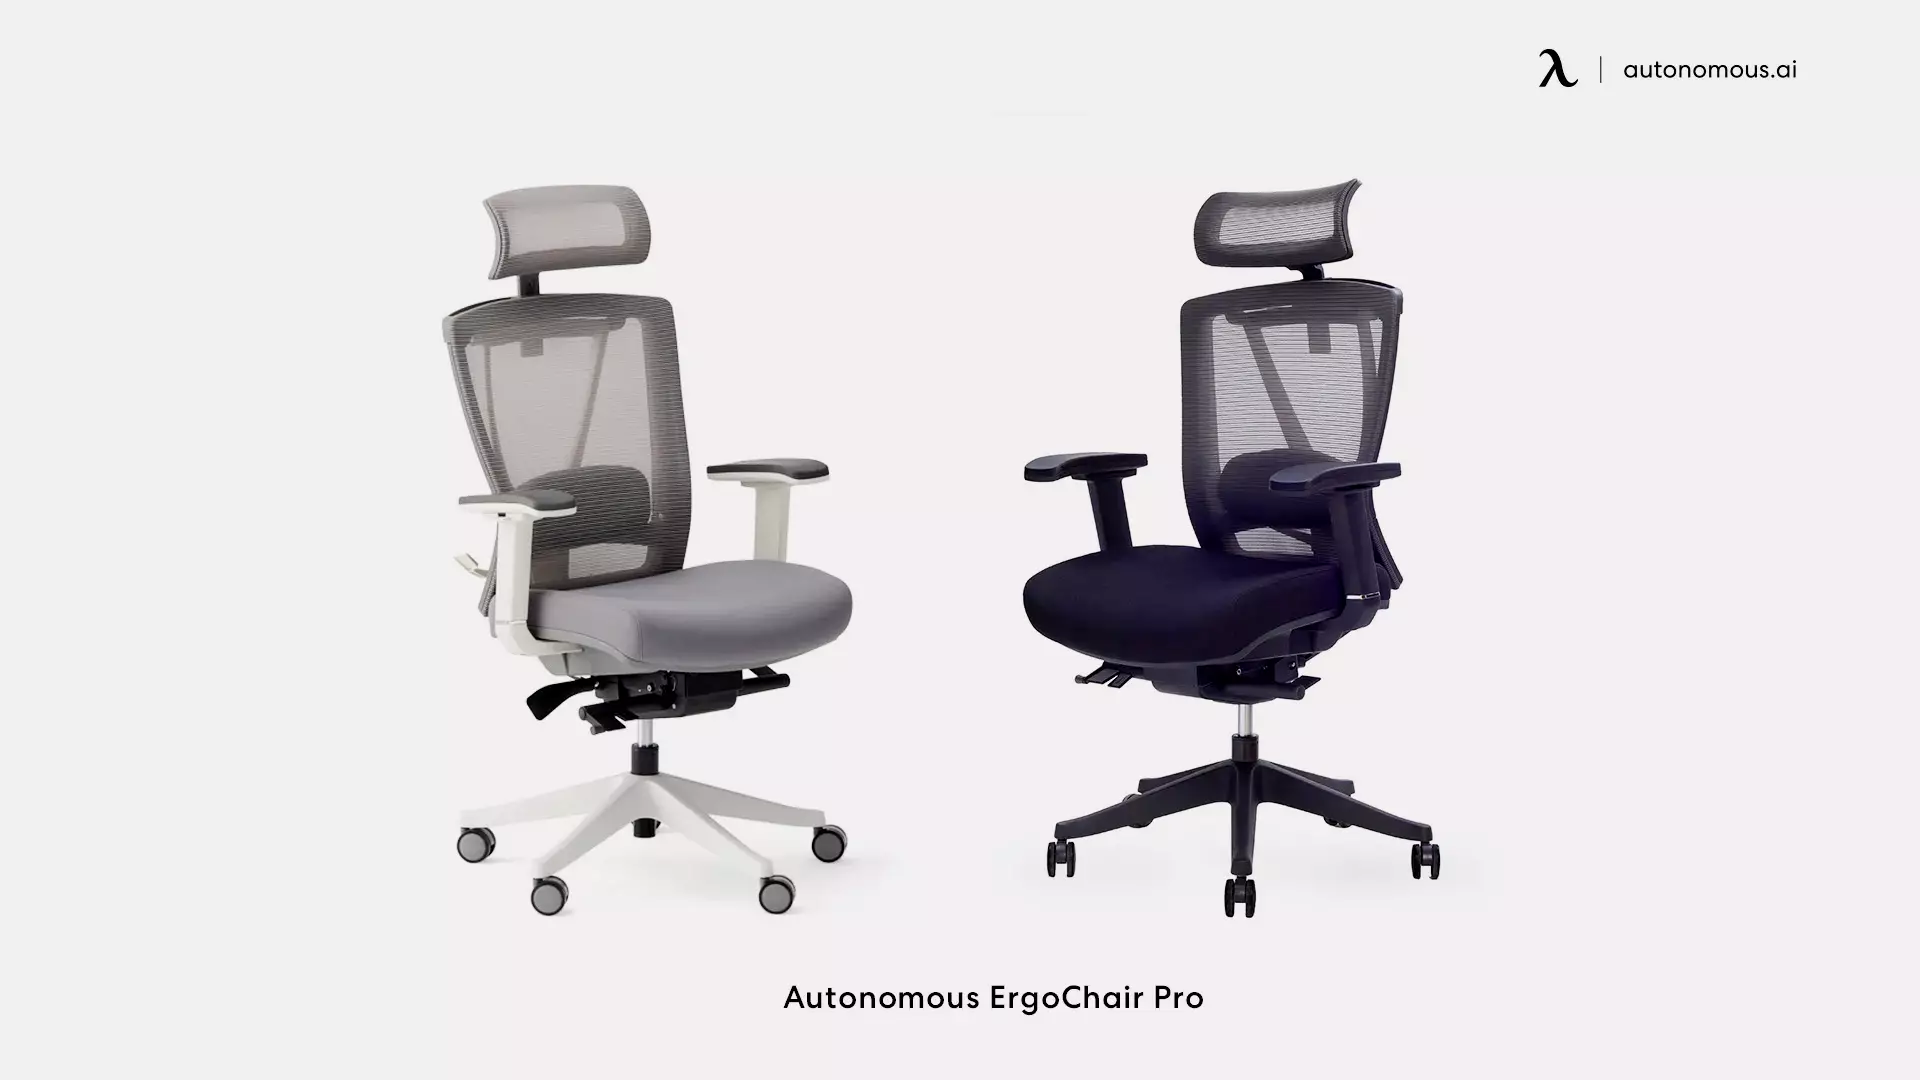 Autonomous ErgoChair Pro - office chair weight limit